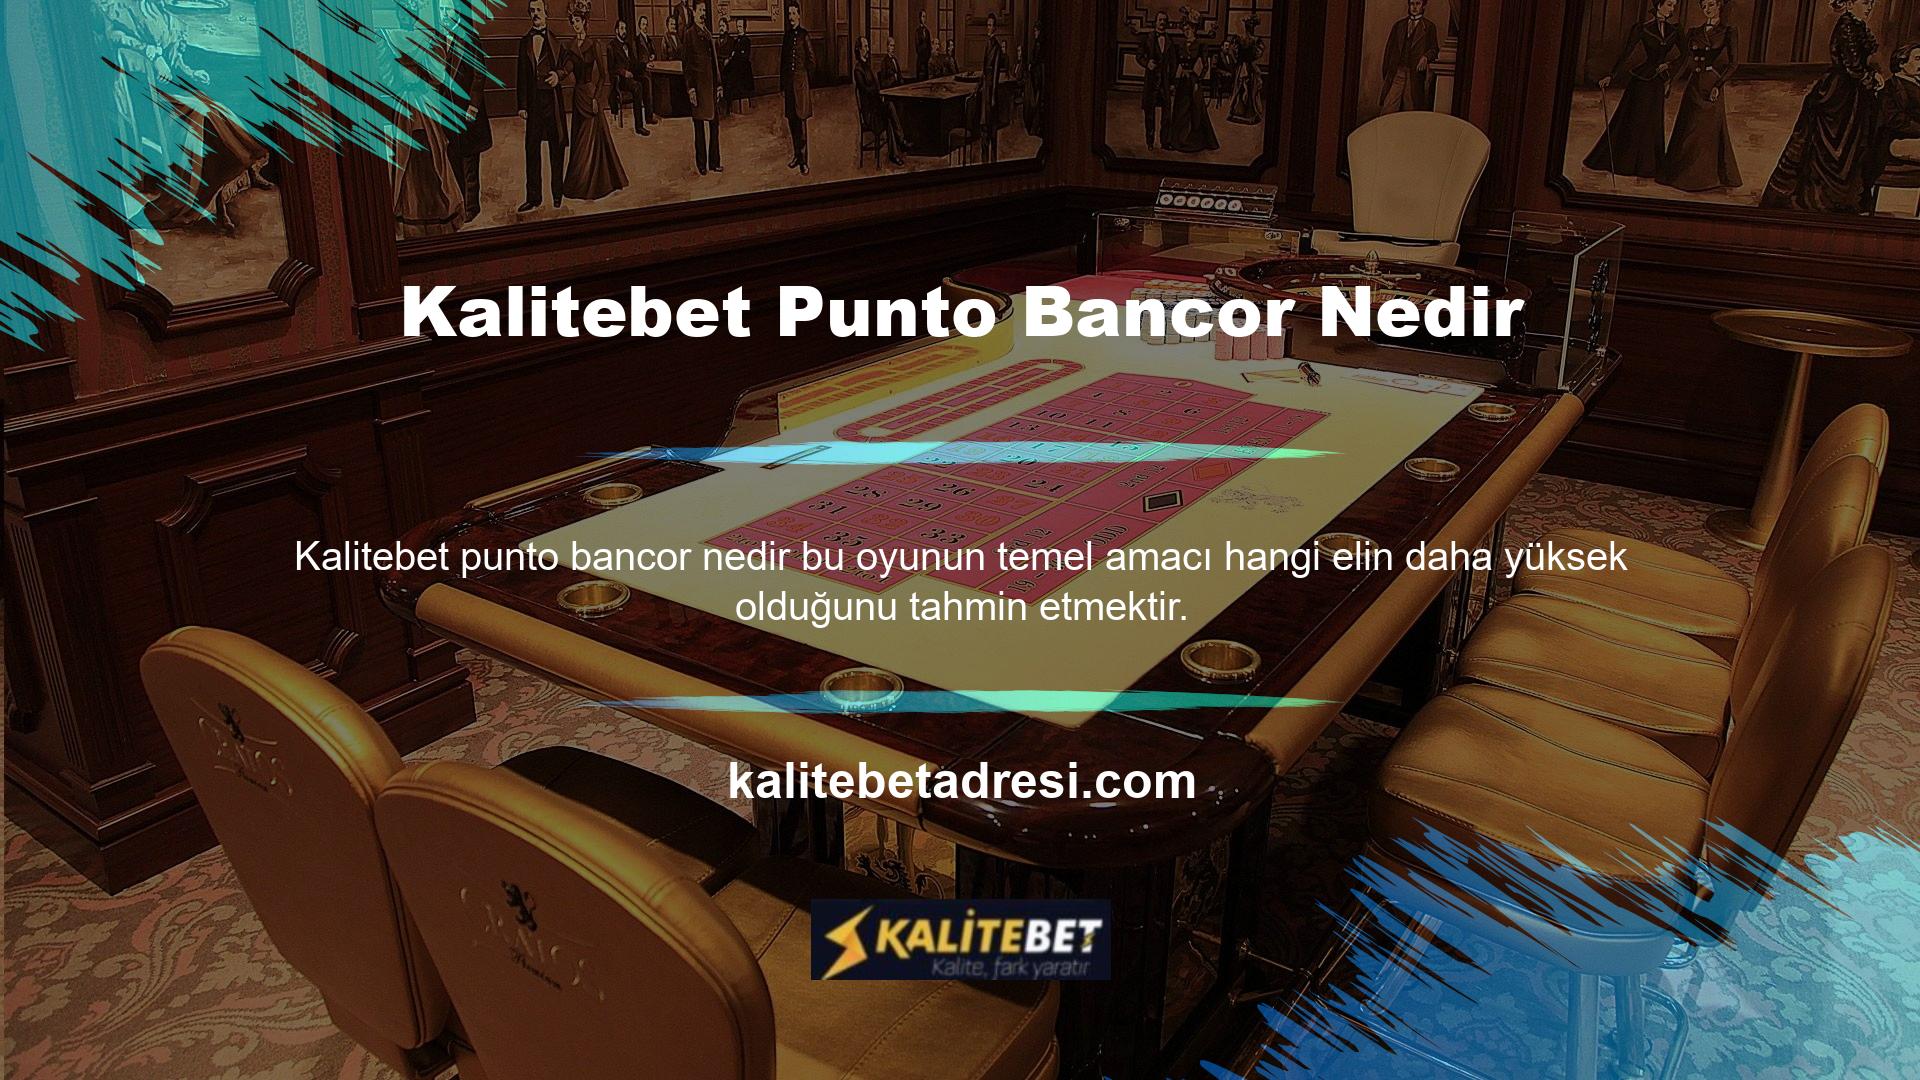 Kalitebet Punto Banco nedir? Yüksek ödeme olasılığının yanı sıra, Punto (oyuncu) ve Bancor (banka) arasındaki beraberlik olasılığını da tahmin edebilirsiniz